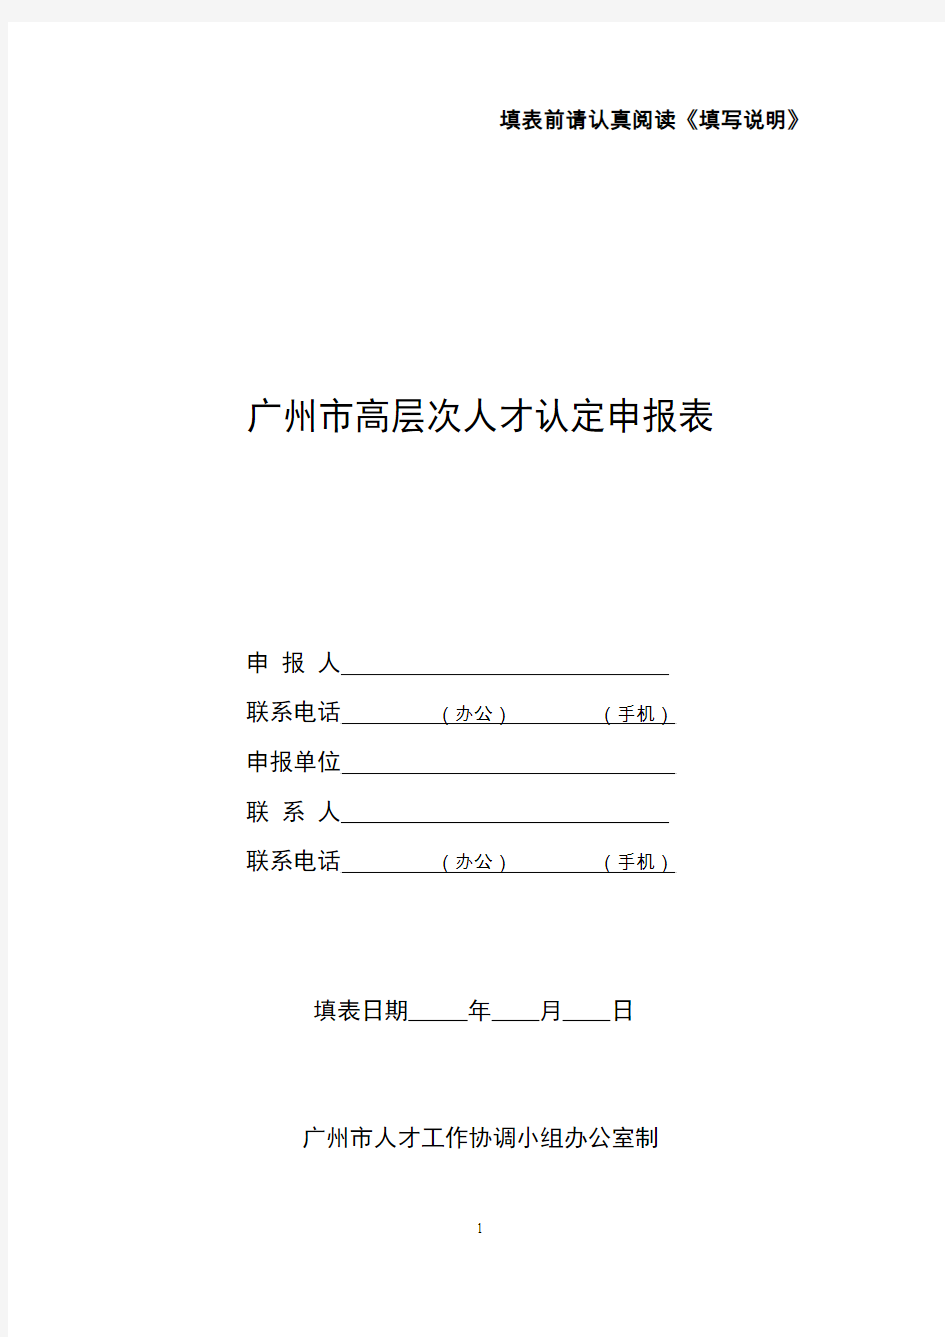 广州高层次人才认定申报表-广州留学人员服务中心